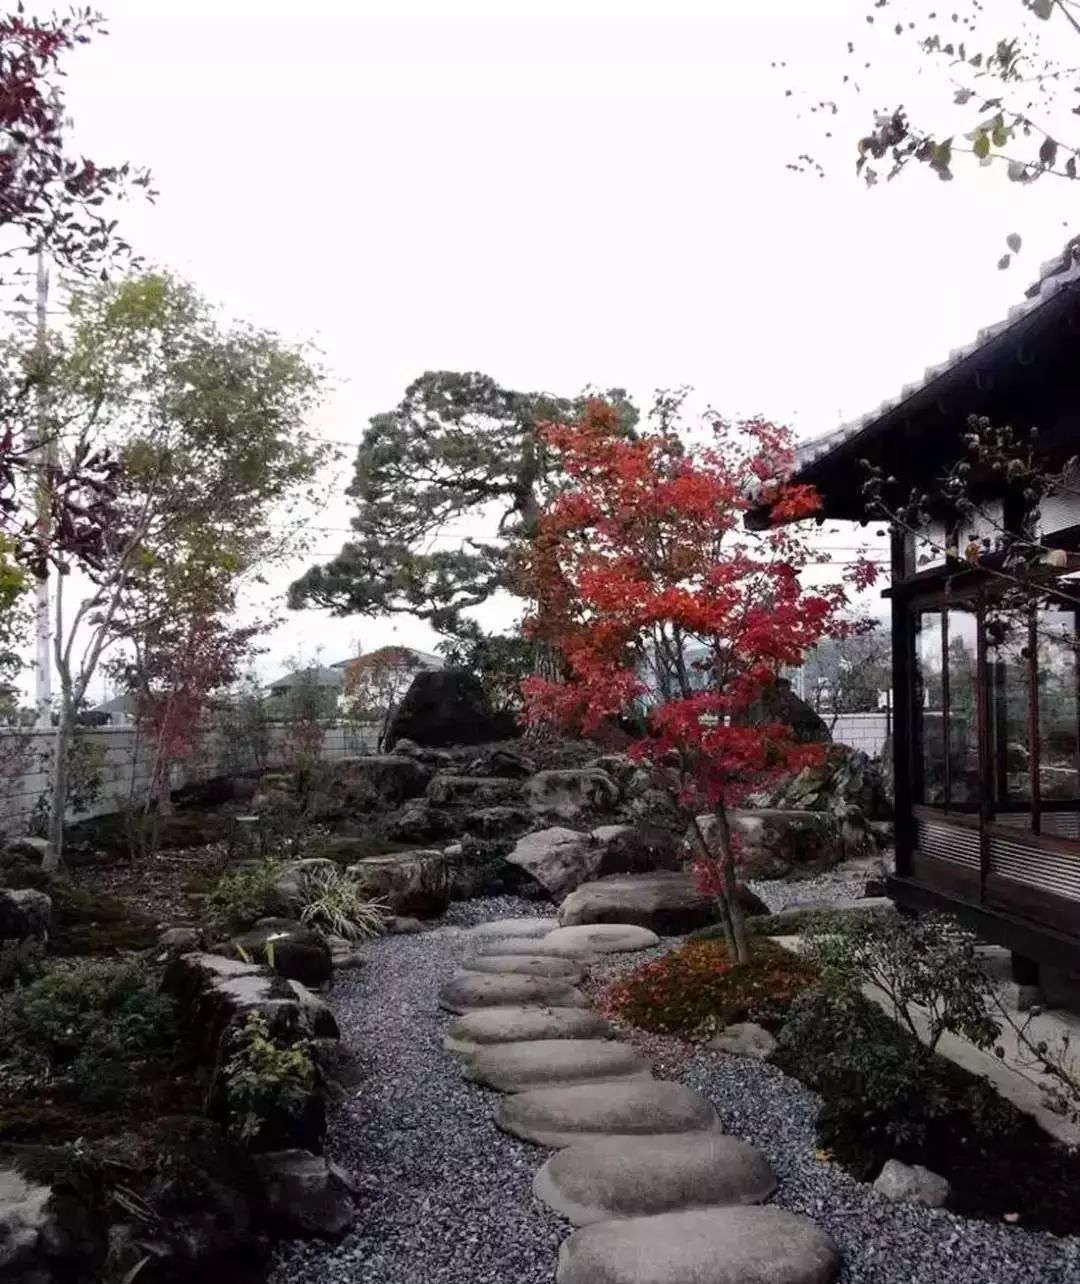 禅意花园——日式美学的精髓!